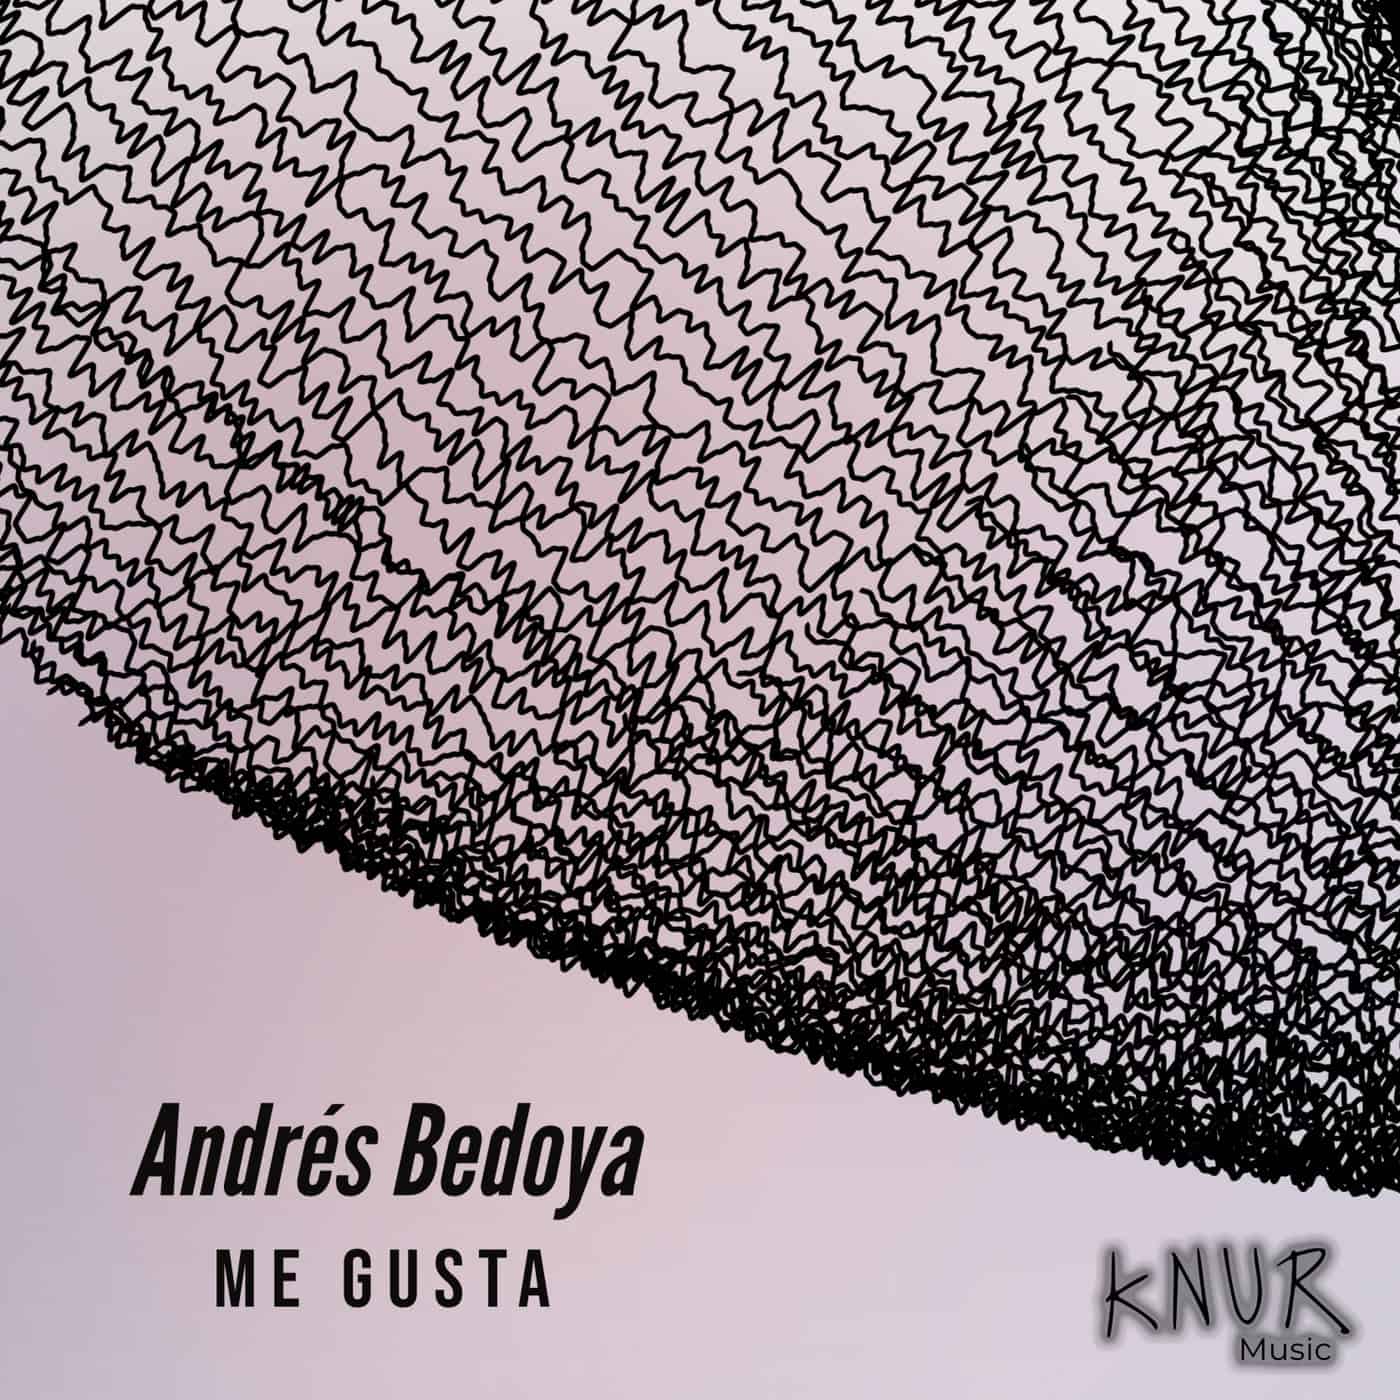 Download ANDRES BEDOYA - Me Gusta on Electrobuzz